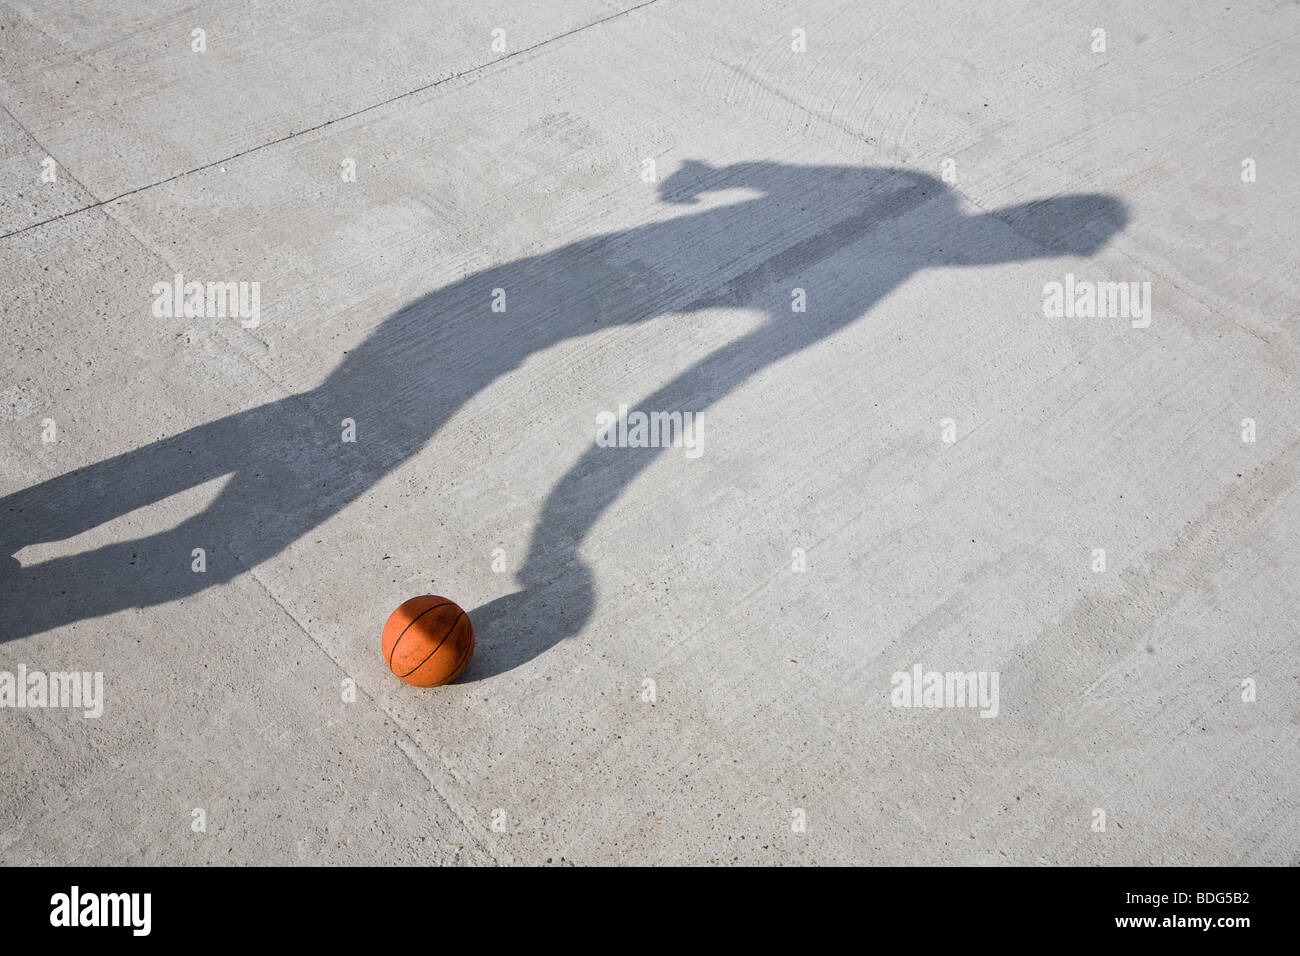 Jouer au basket-ball de l'ombre Banque D'Images